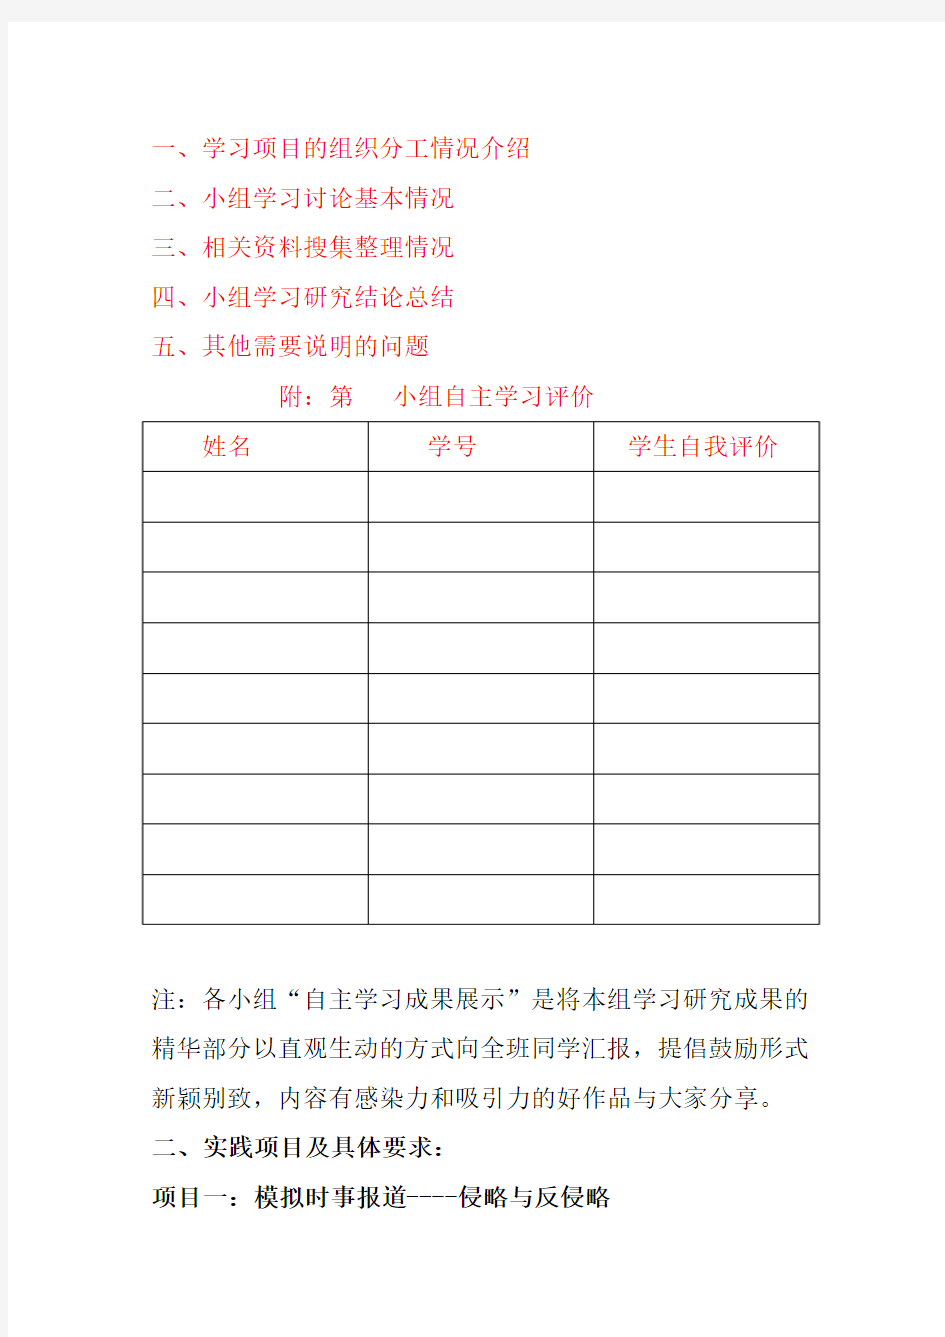 2013—2014第2学期《中国近现代史纲要》  自主学习实践项目及要求